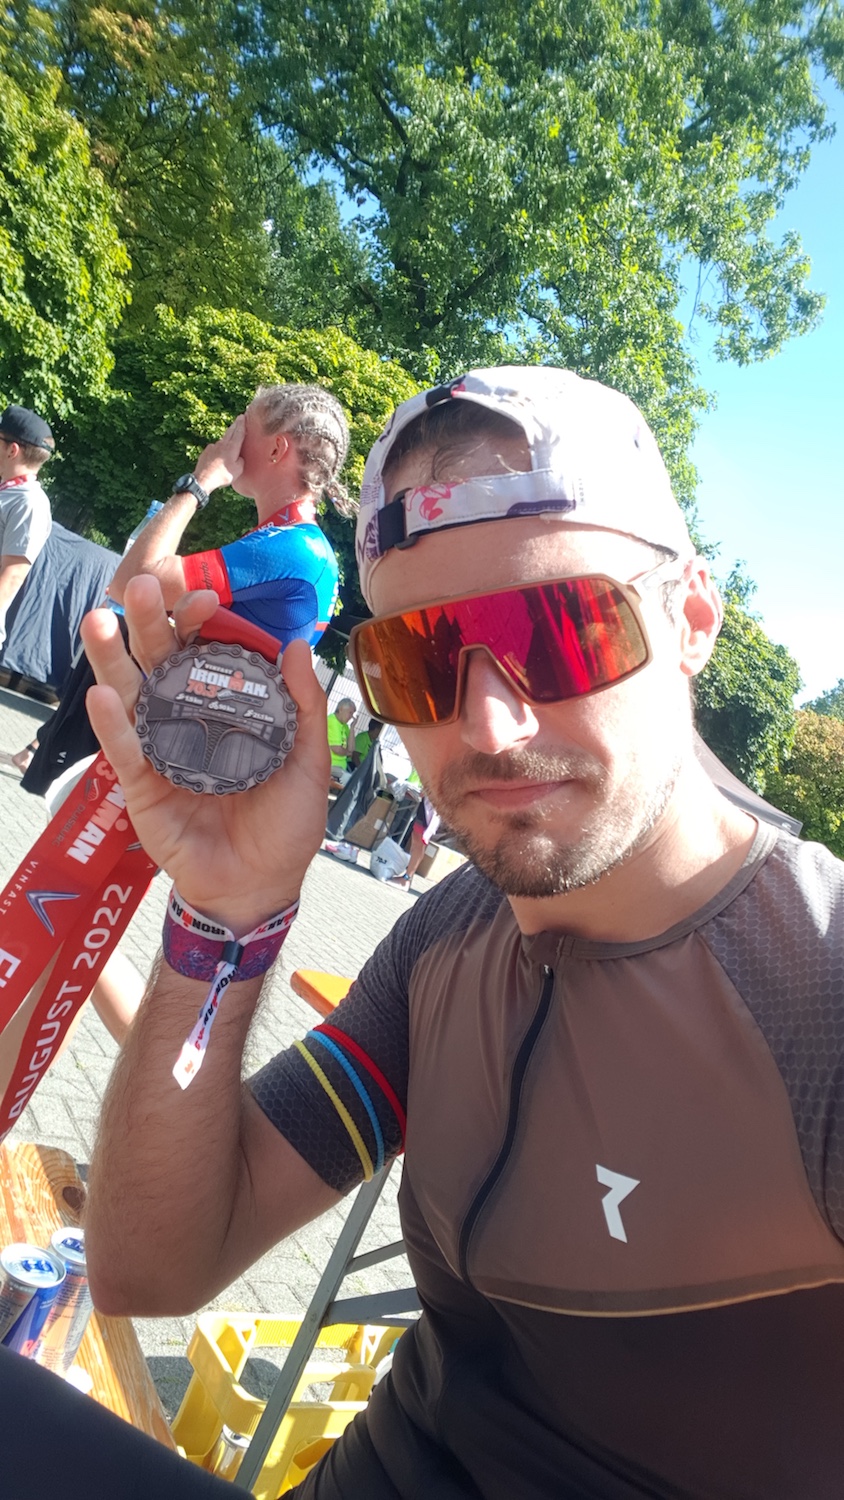 REKORDJAGD beim Ironman Duisburg